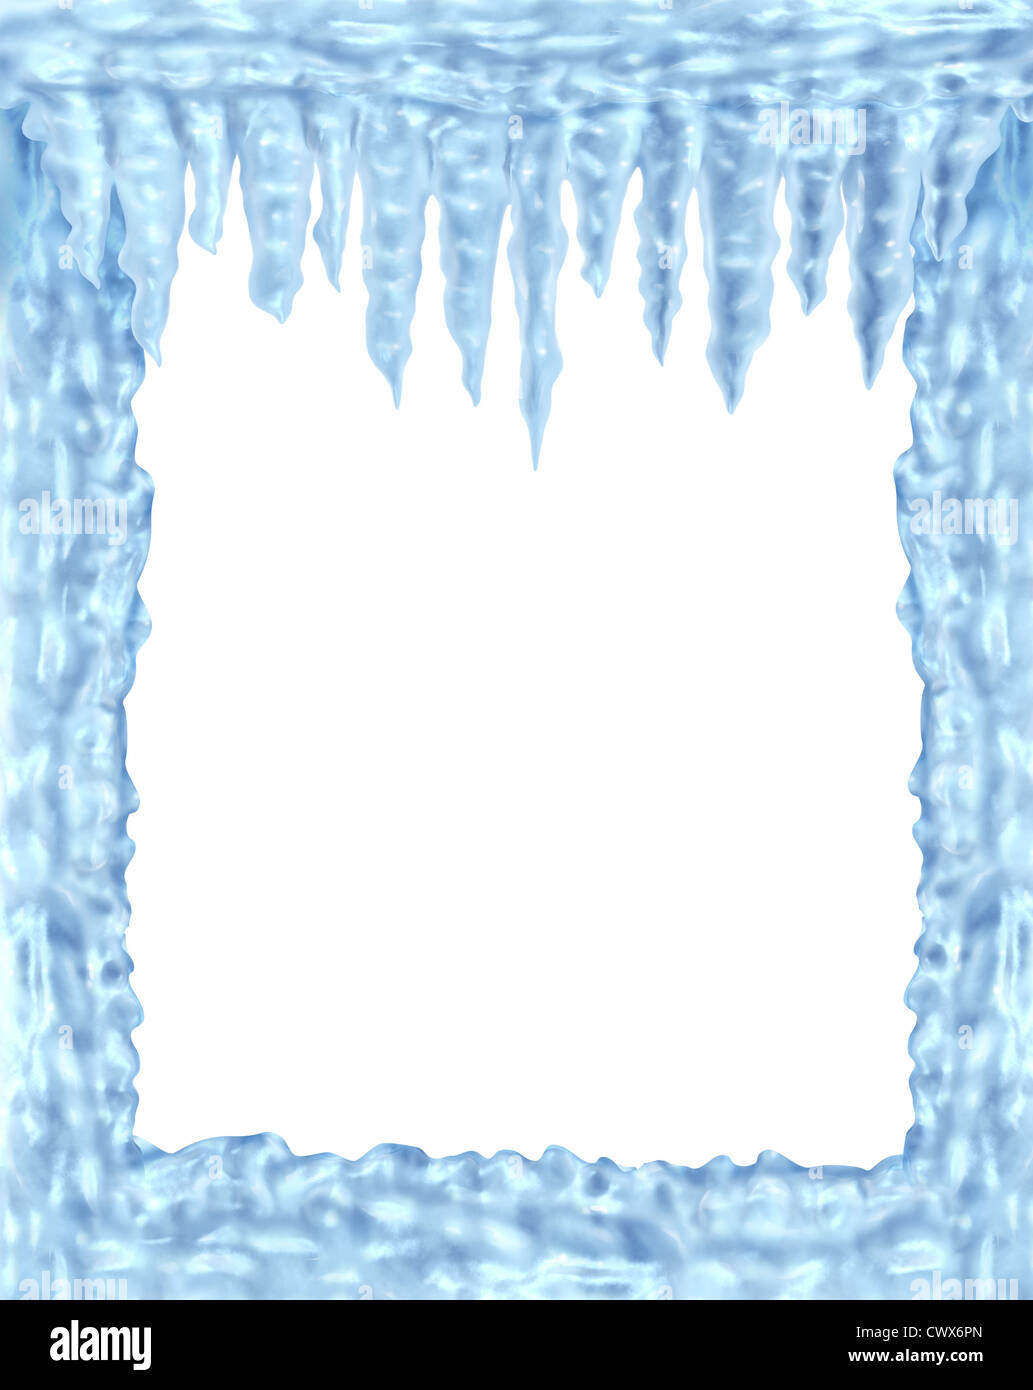 Eis und Eiszapfen Rahmen Winter-Design-Element auf einem leeren weißen Hintergrund Vertretung der arktischen Kälte und niedrigen Temperaturen wiederum glänzend transparent Eiskristalle hängen. Stockfoto